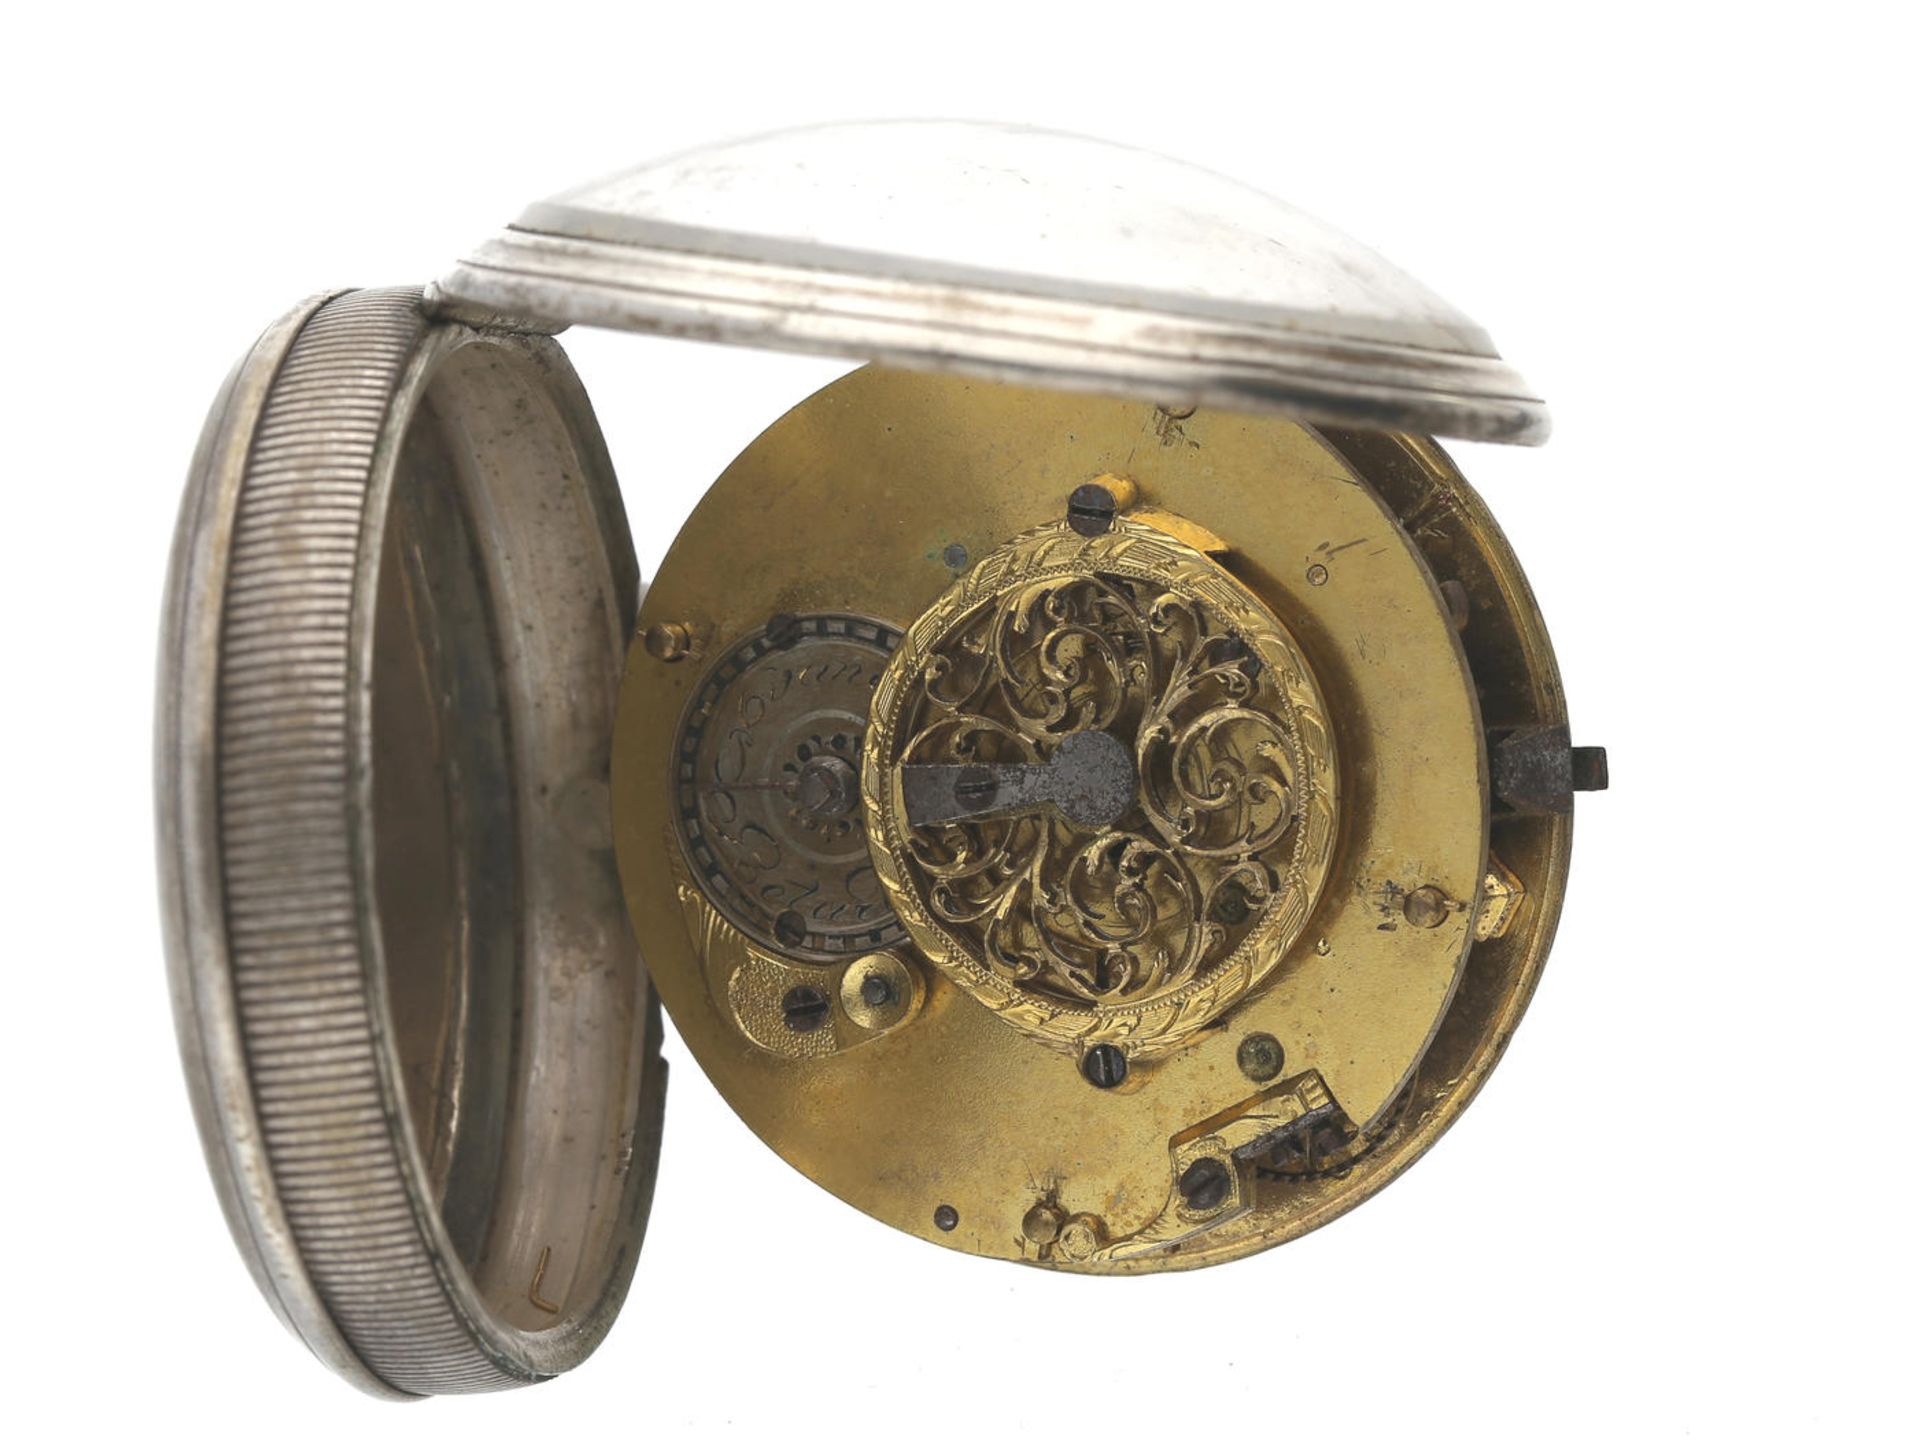 Taschenuhr: dekorative Spindeluhr mit besonders schönem Emaillezifferblatt, um 1800 Ca. Ø44mm, ca. - Bild 2 aus 2